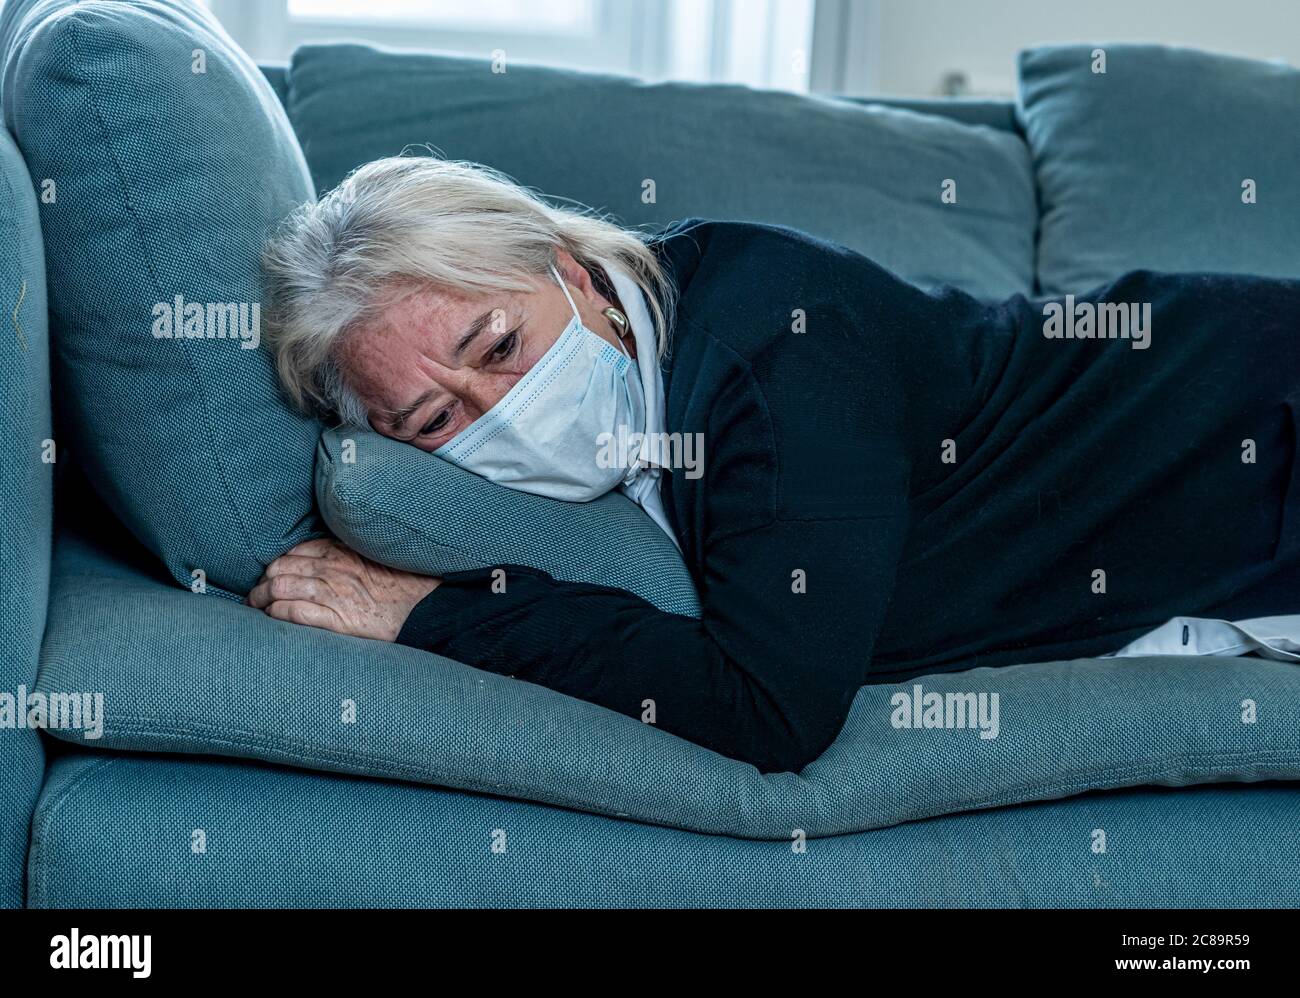 Donna vedova anziana depressa solitaria con maschera protettiva che grida sul divano isolato a casa, triste e preoccupato marito e famiglia scomparso in COVID-19 deat Foto Stock